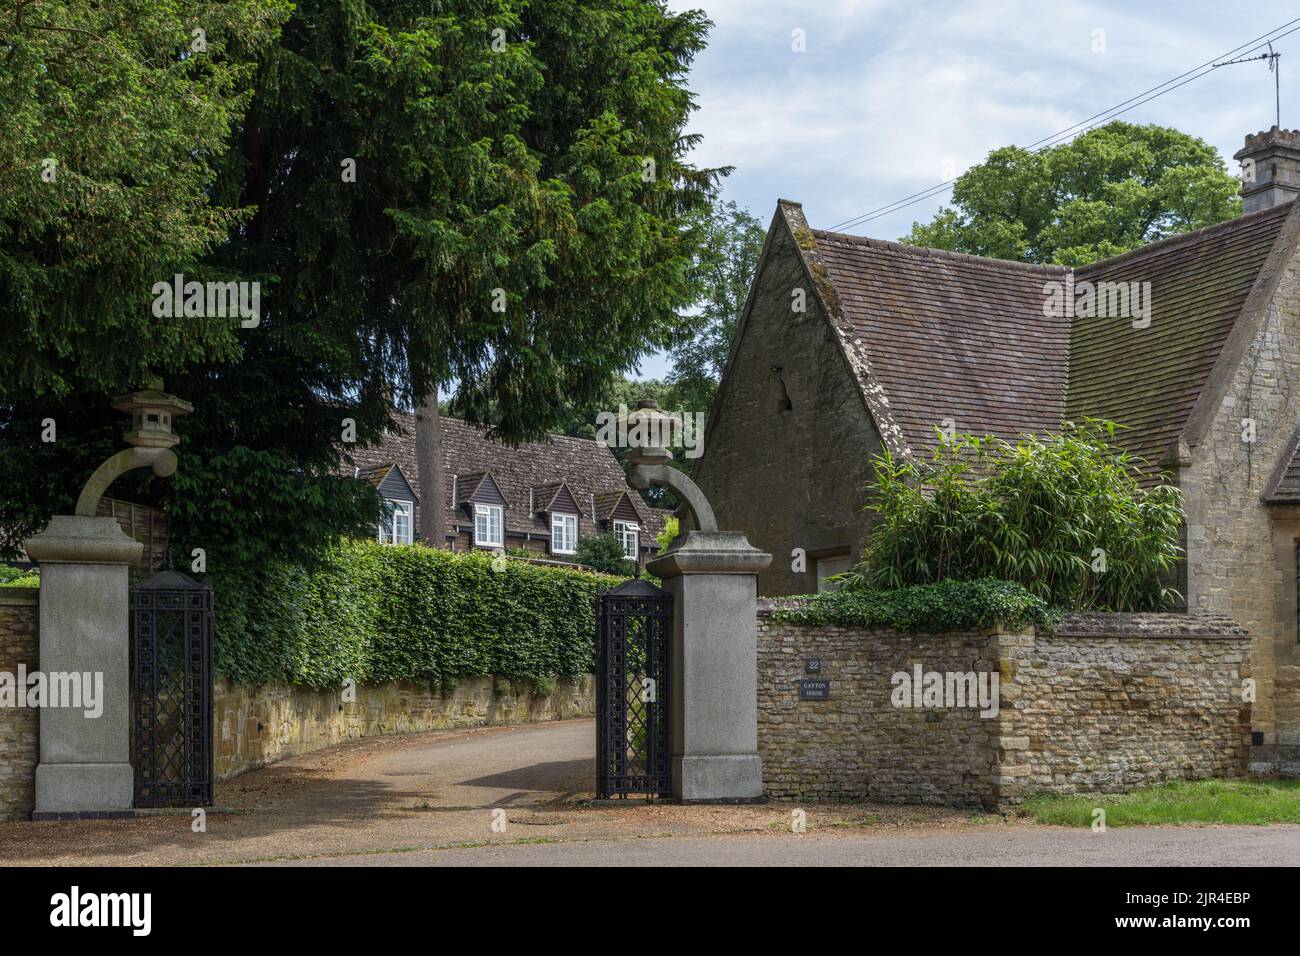 Gayton House, una propiedad de época en el pueblo de Gayton, Northamptonshire, Reino Unido; puertas y postes de Sir Clough Williams-Ellis Foto de stock